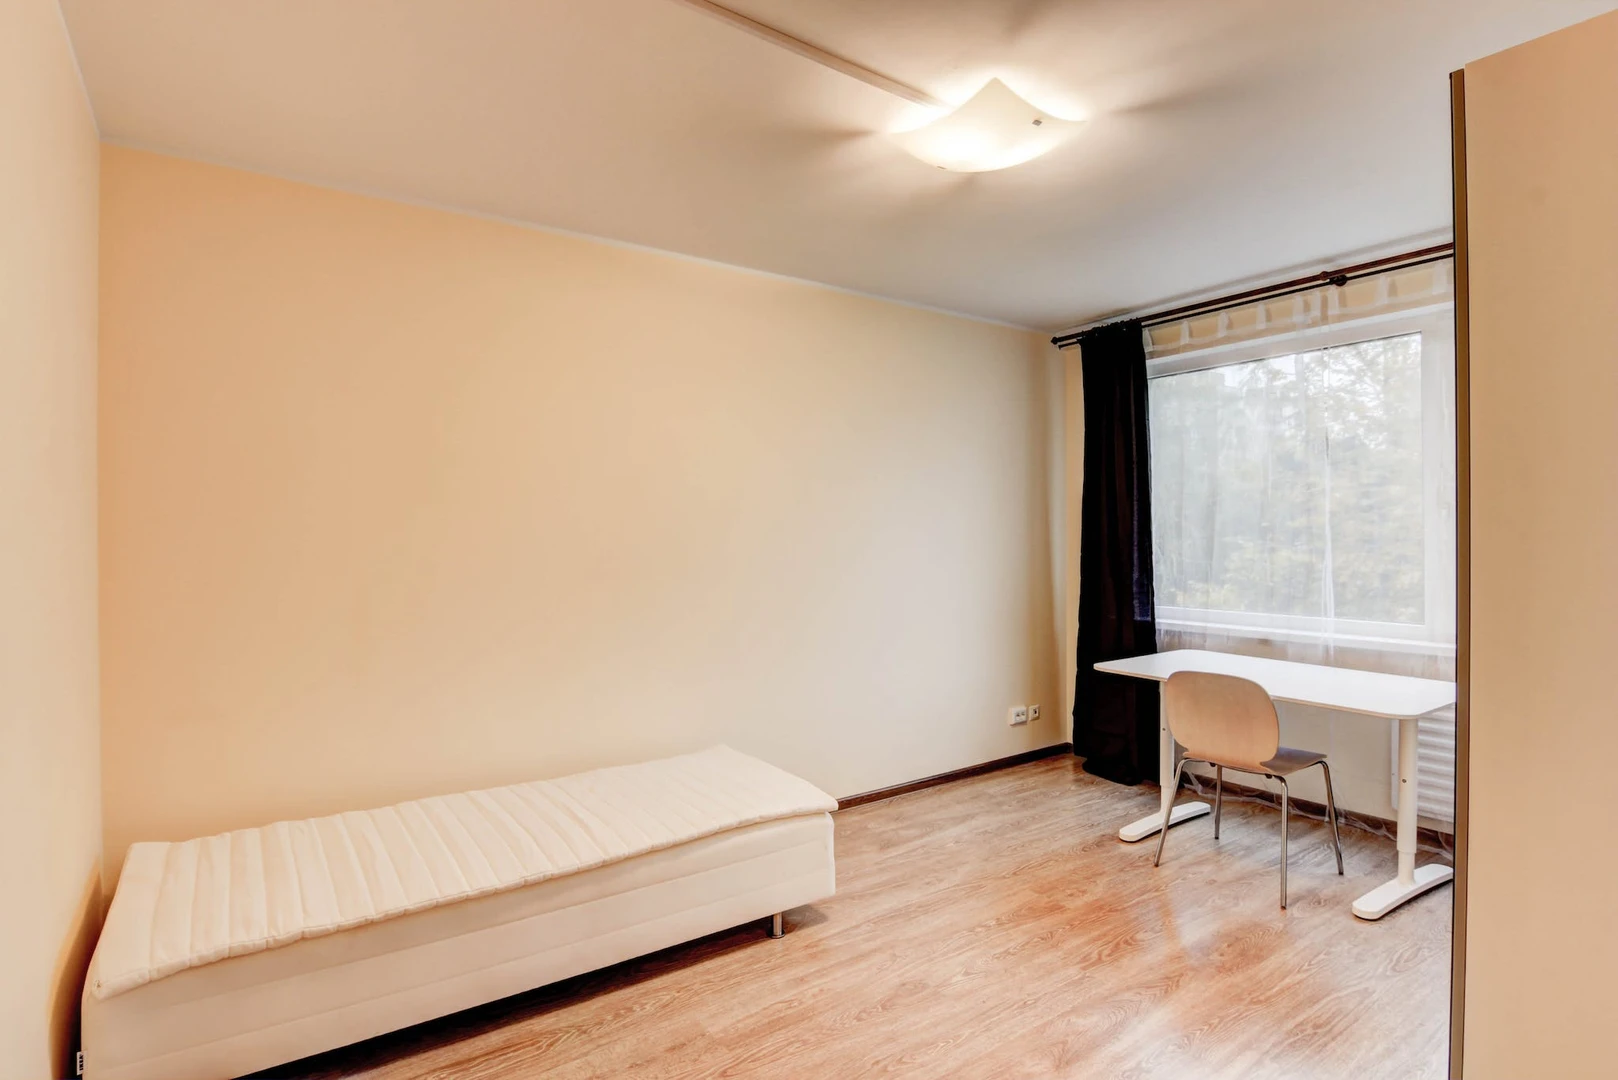 Vilnius de çift kişilik yataklı kiralık oda